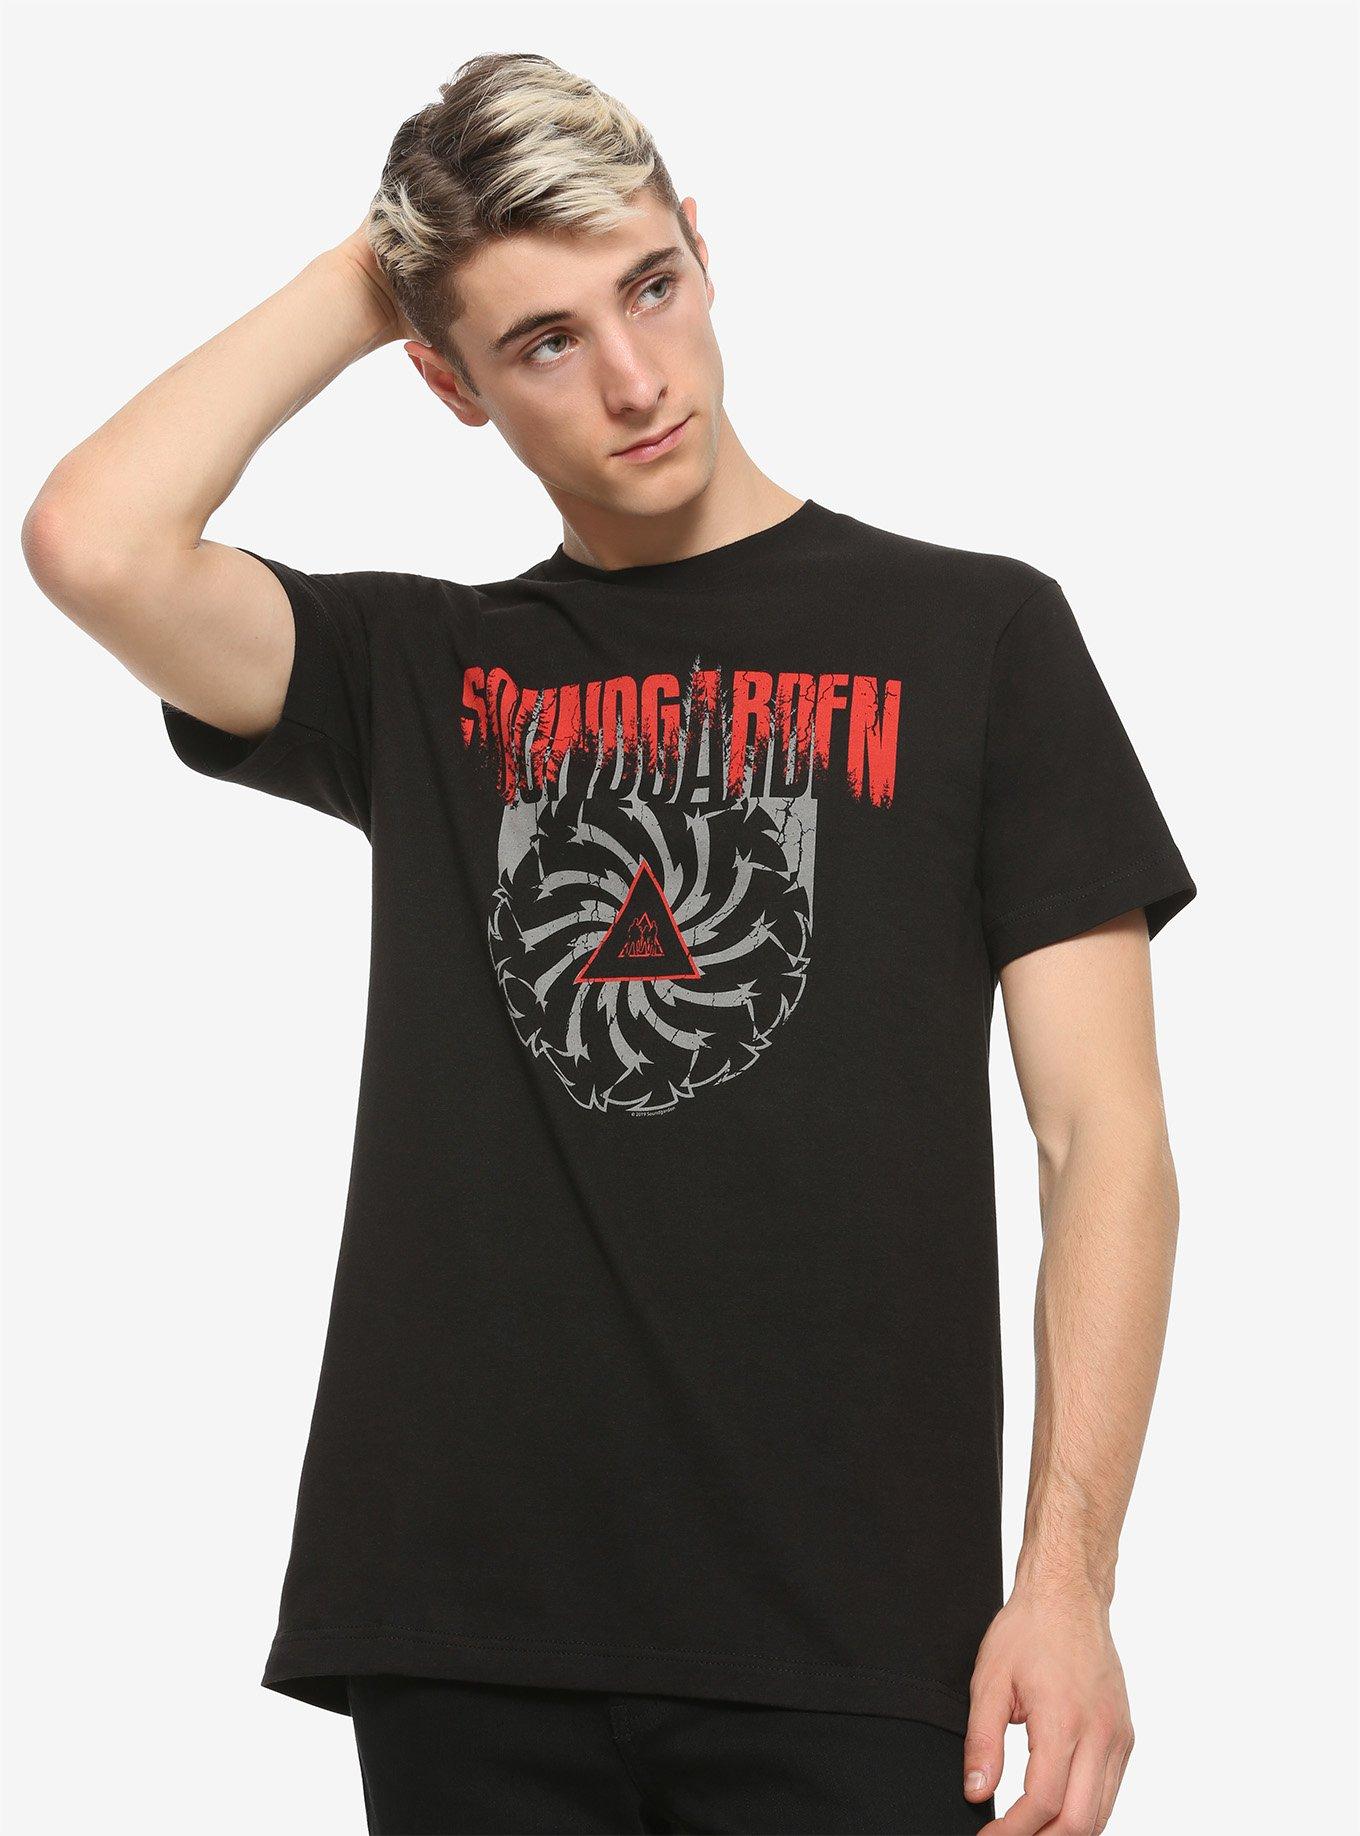 Soundgarden Badmotorfinger Album Cover T-Shirt, BLACK, alternate